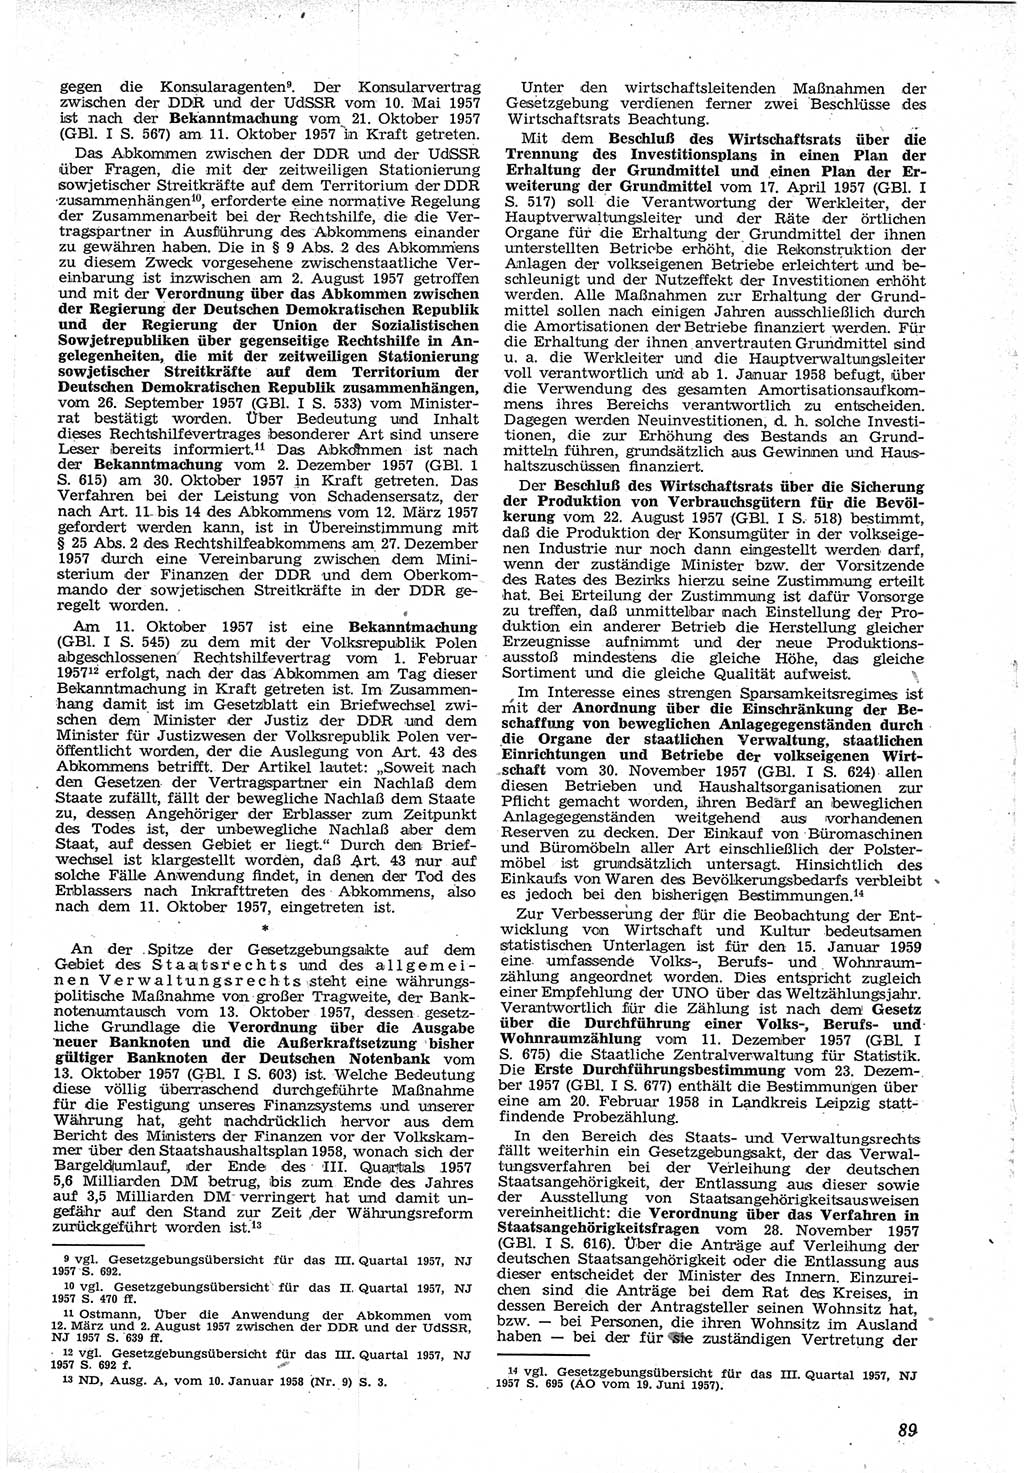 Neue Justiz (NJ), Zeitschrift für Recht und Rechtswissenschaft [Deutsche Demokratische Republik (DDR)], 12. Jahrgang 1958, Seite 89 (NJ DDR 1958, S. 89)